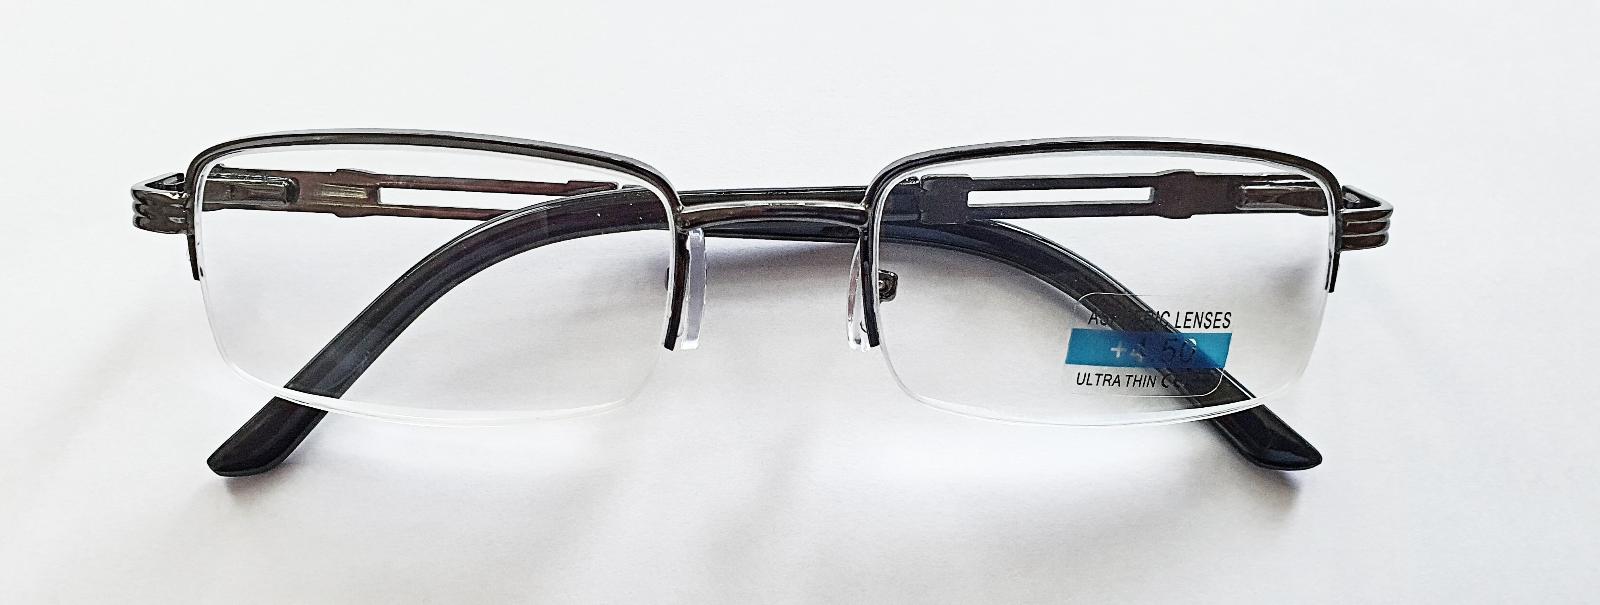 Dioptrické okuliare QiiM RGL M1 čítacie kovové, dioptria +4,5 - Lekáreň a zdravie